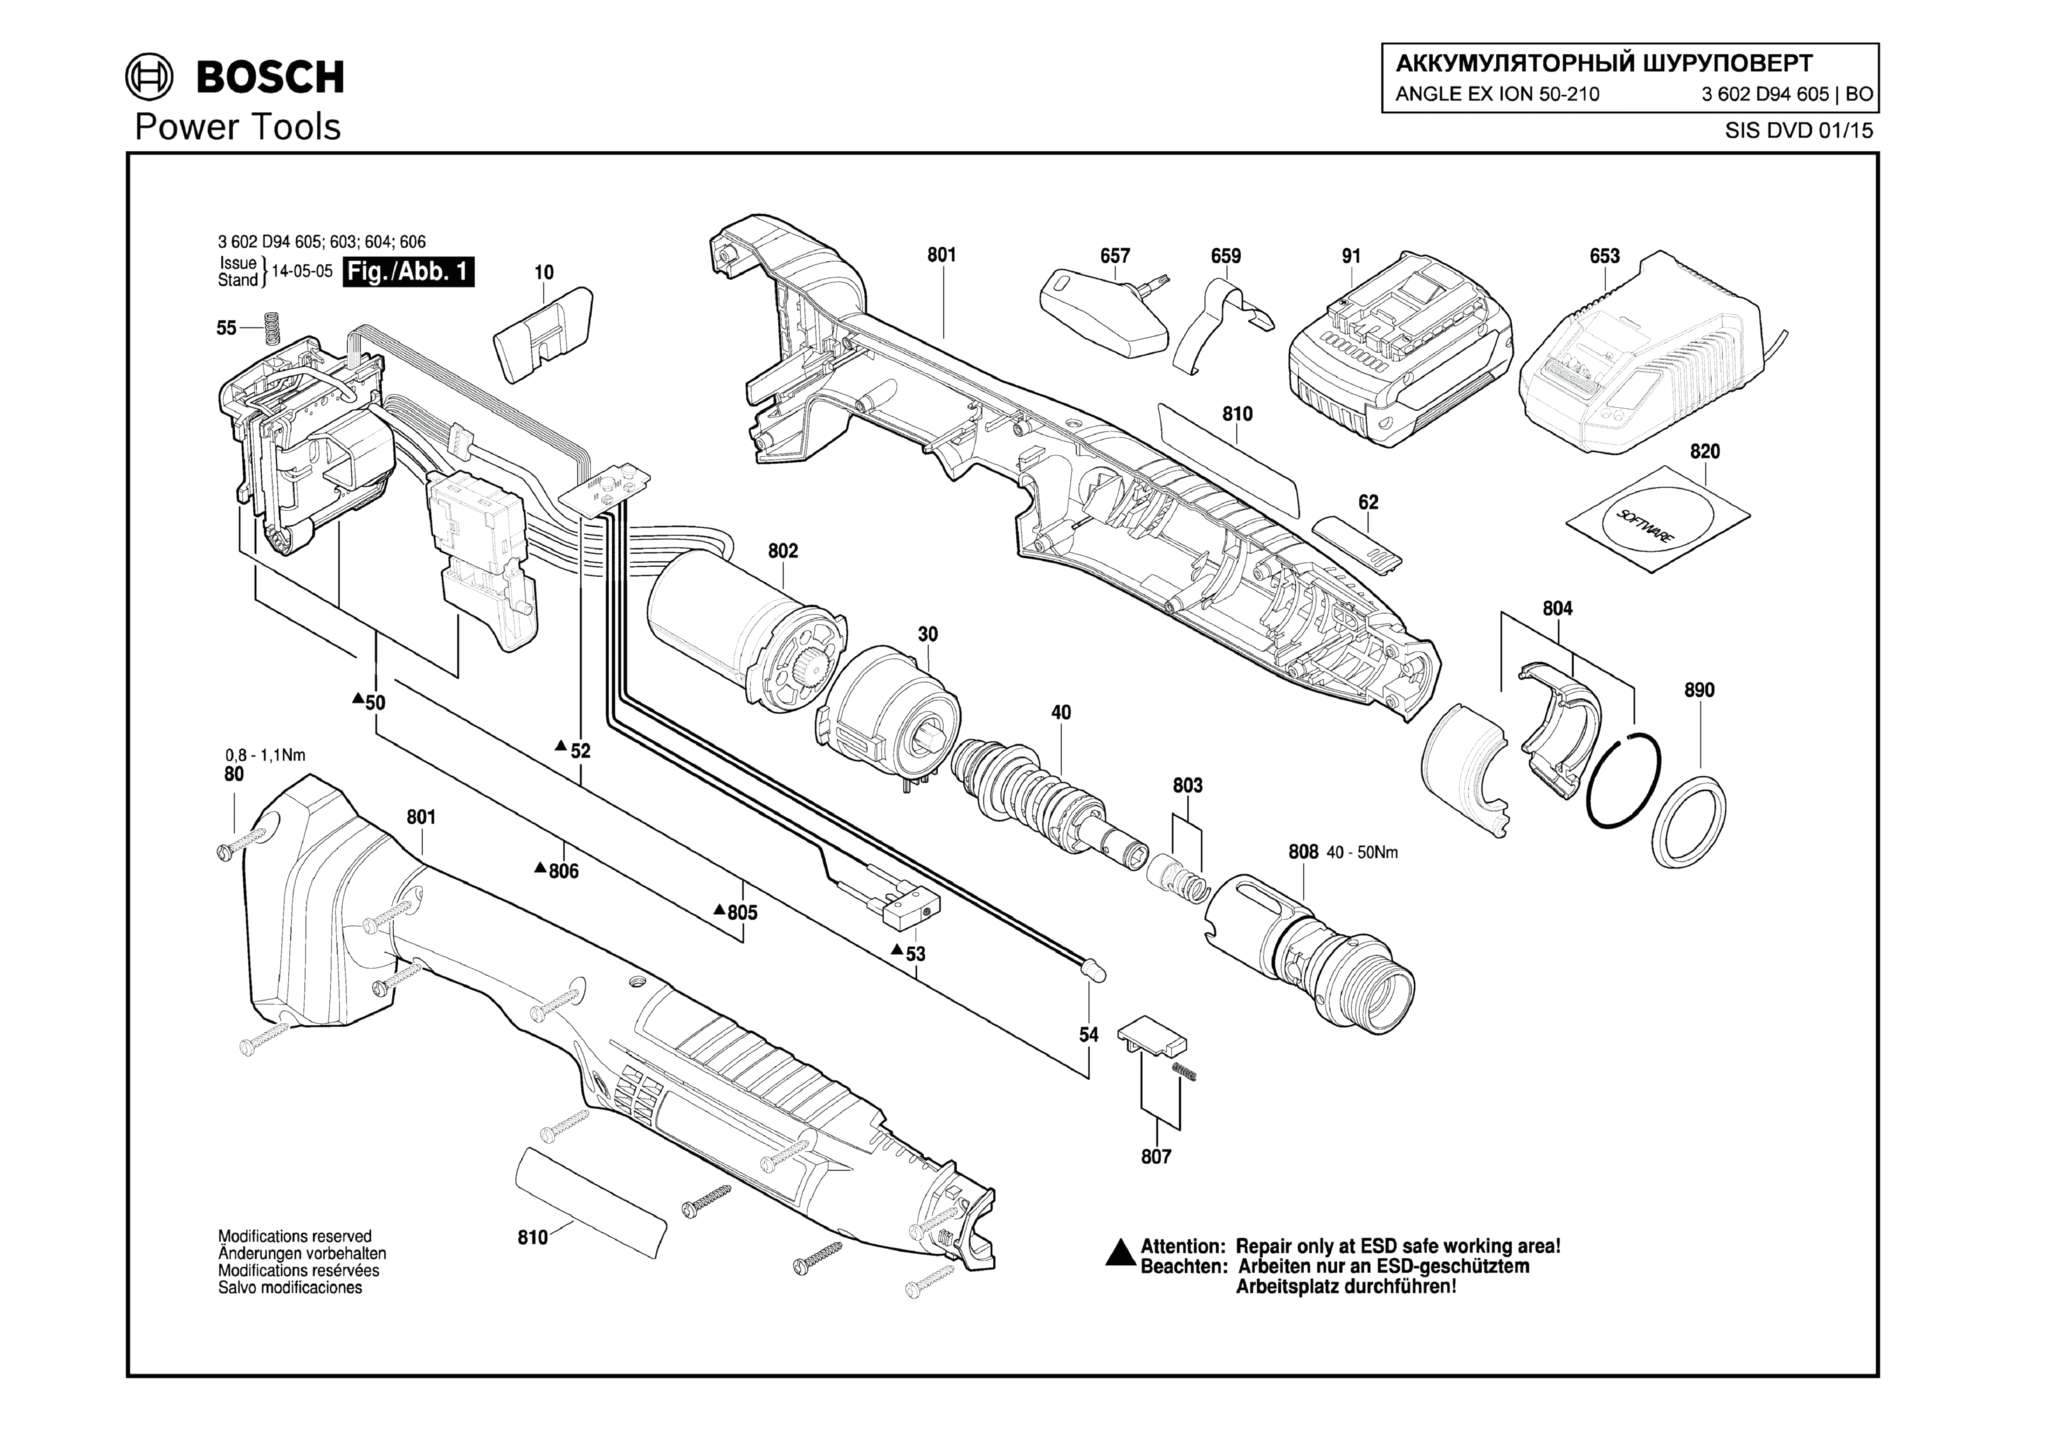 Запчасти, схема и деталировка Bosch ANGLE EX ION 50-210 (ТИП 3602D94605)